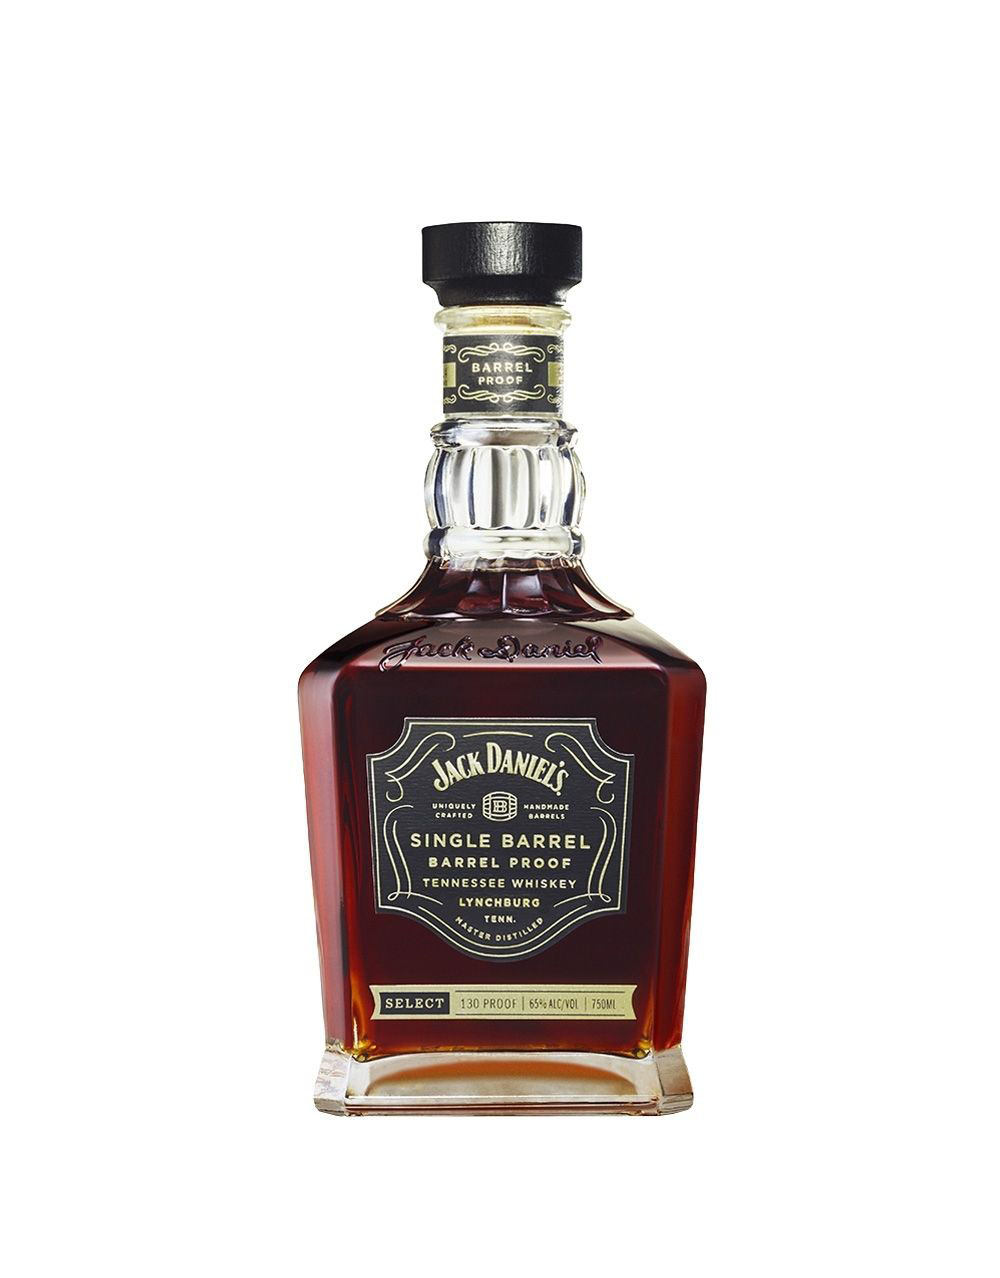 Tatoosh Rye Whiskey